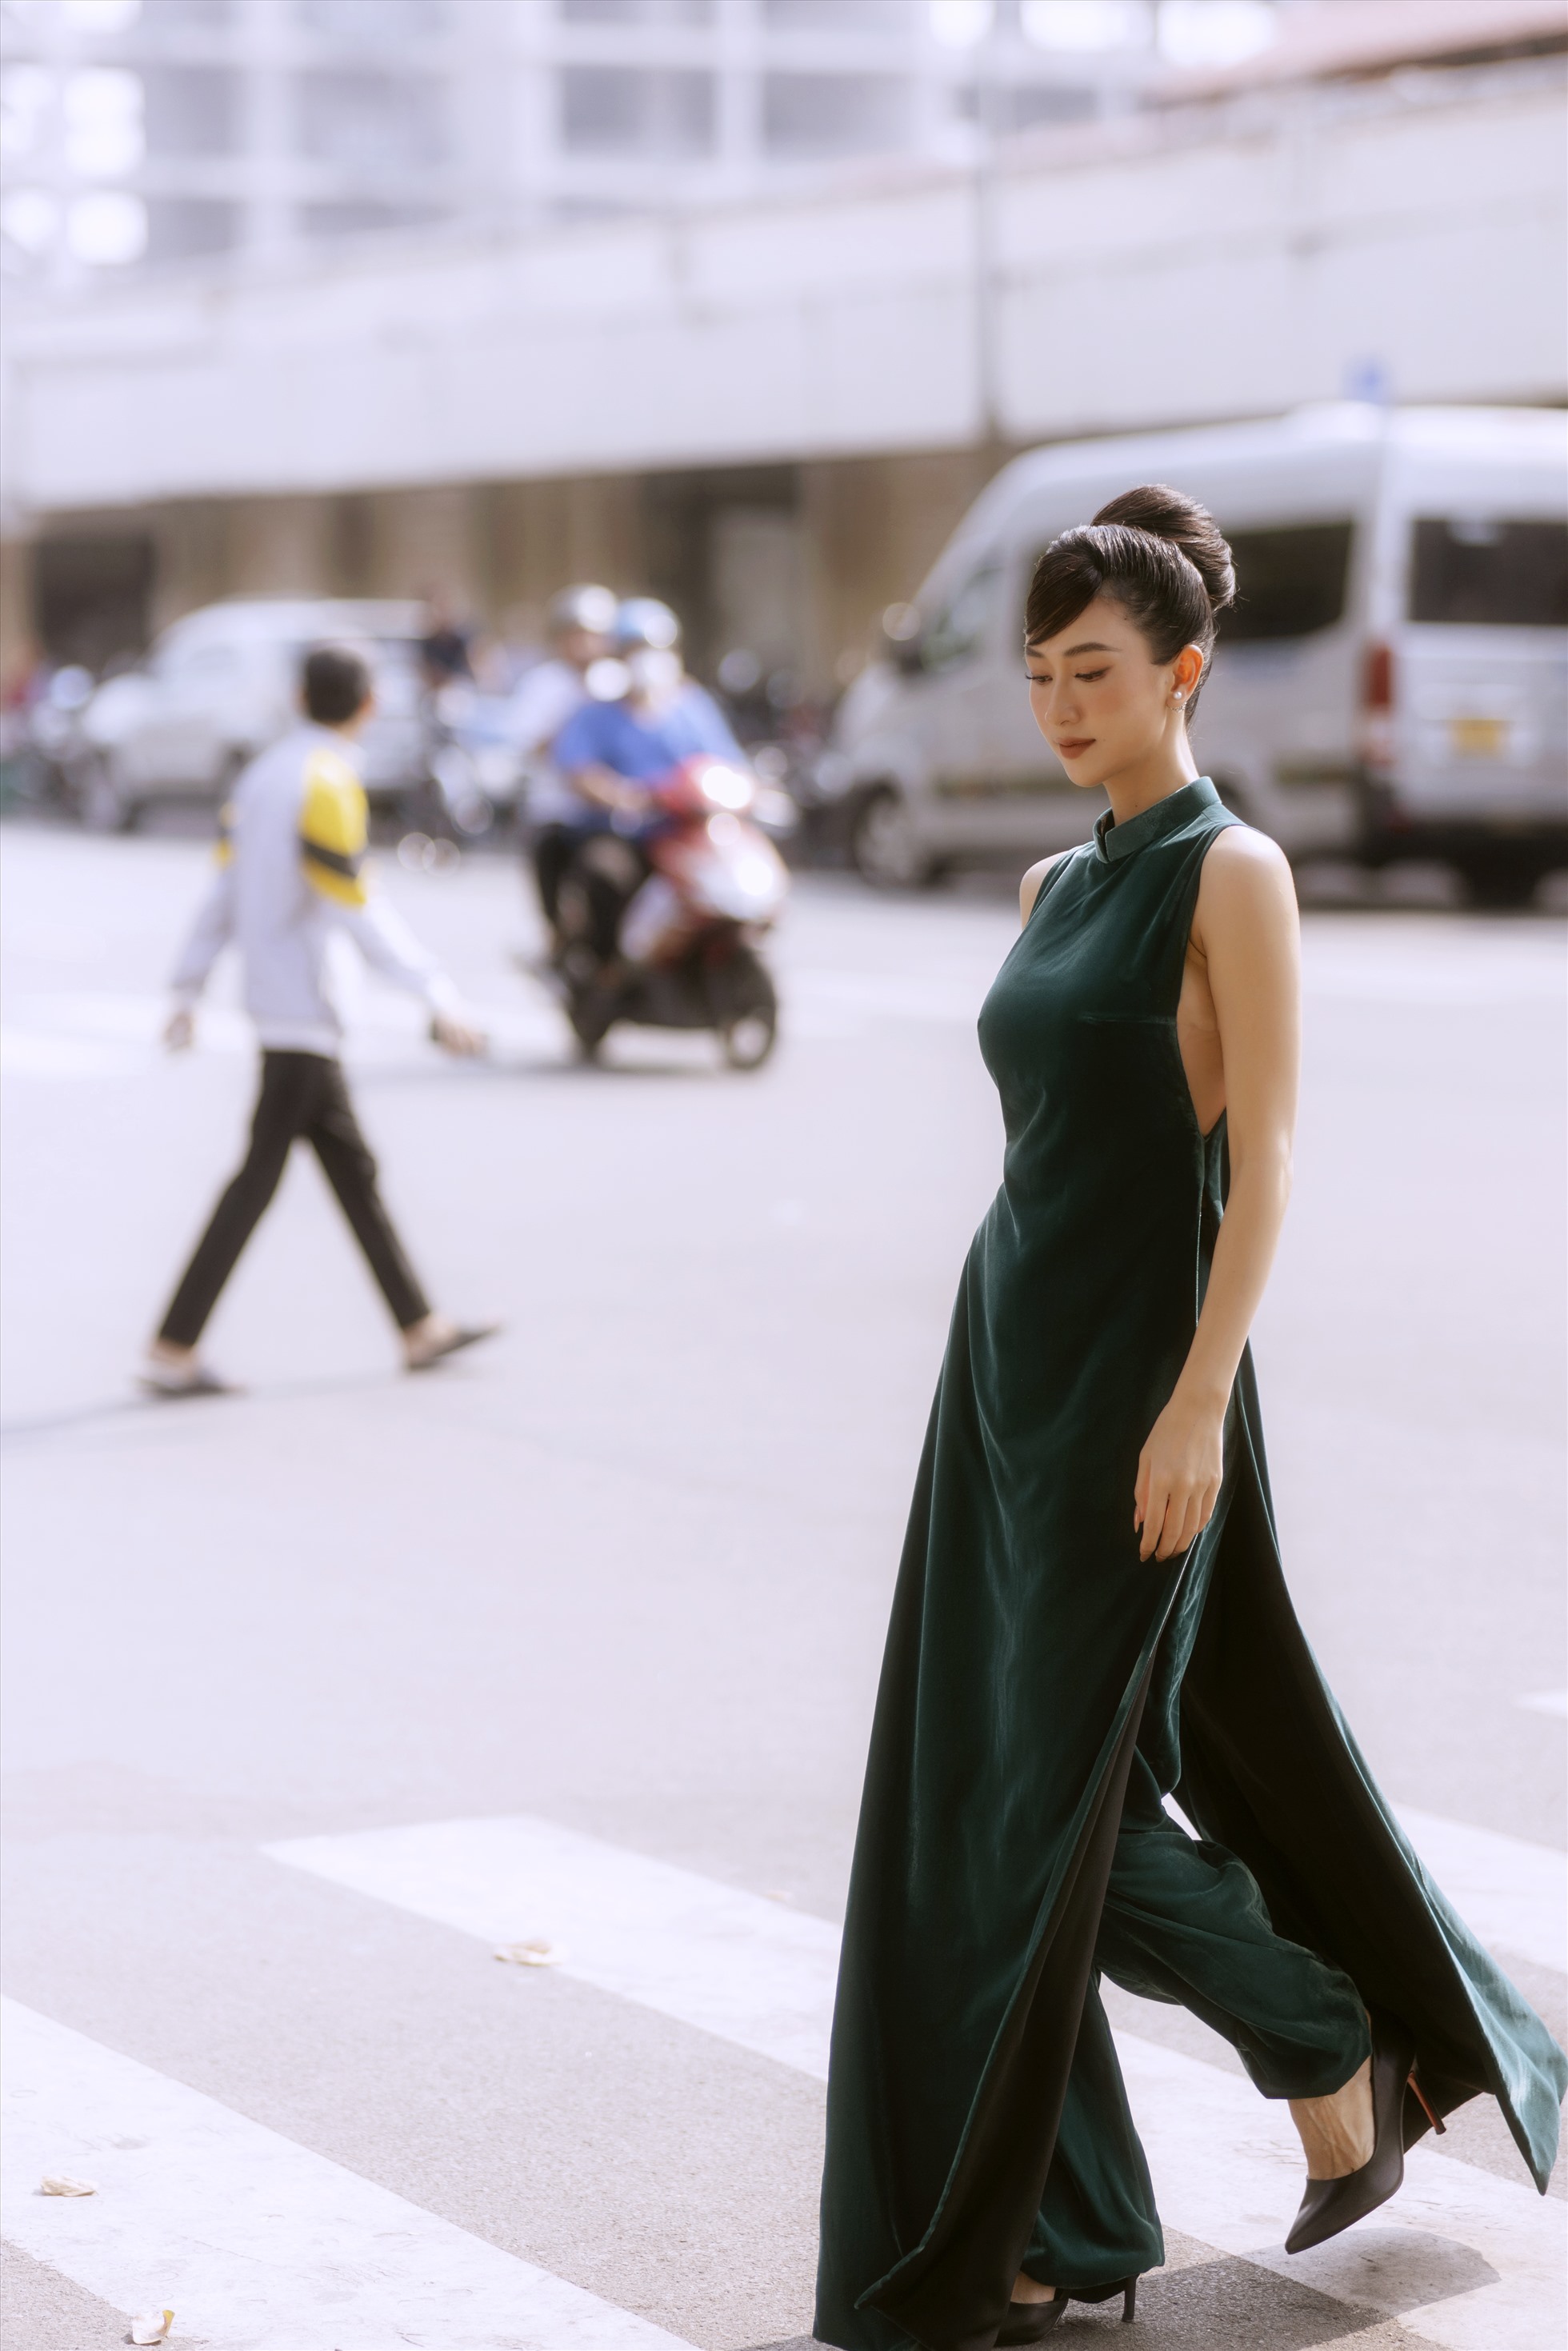 Áo dài là một trong những phân khúc thời trang được nhiều nhà mốt Việt Nam lăng xê mỗi dịp Tết đến Xuân về.